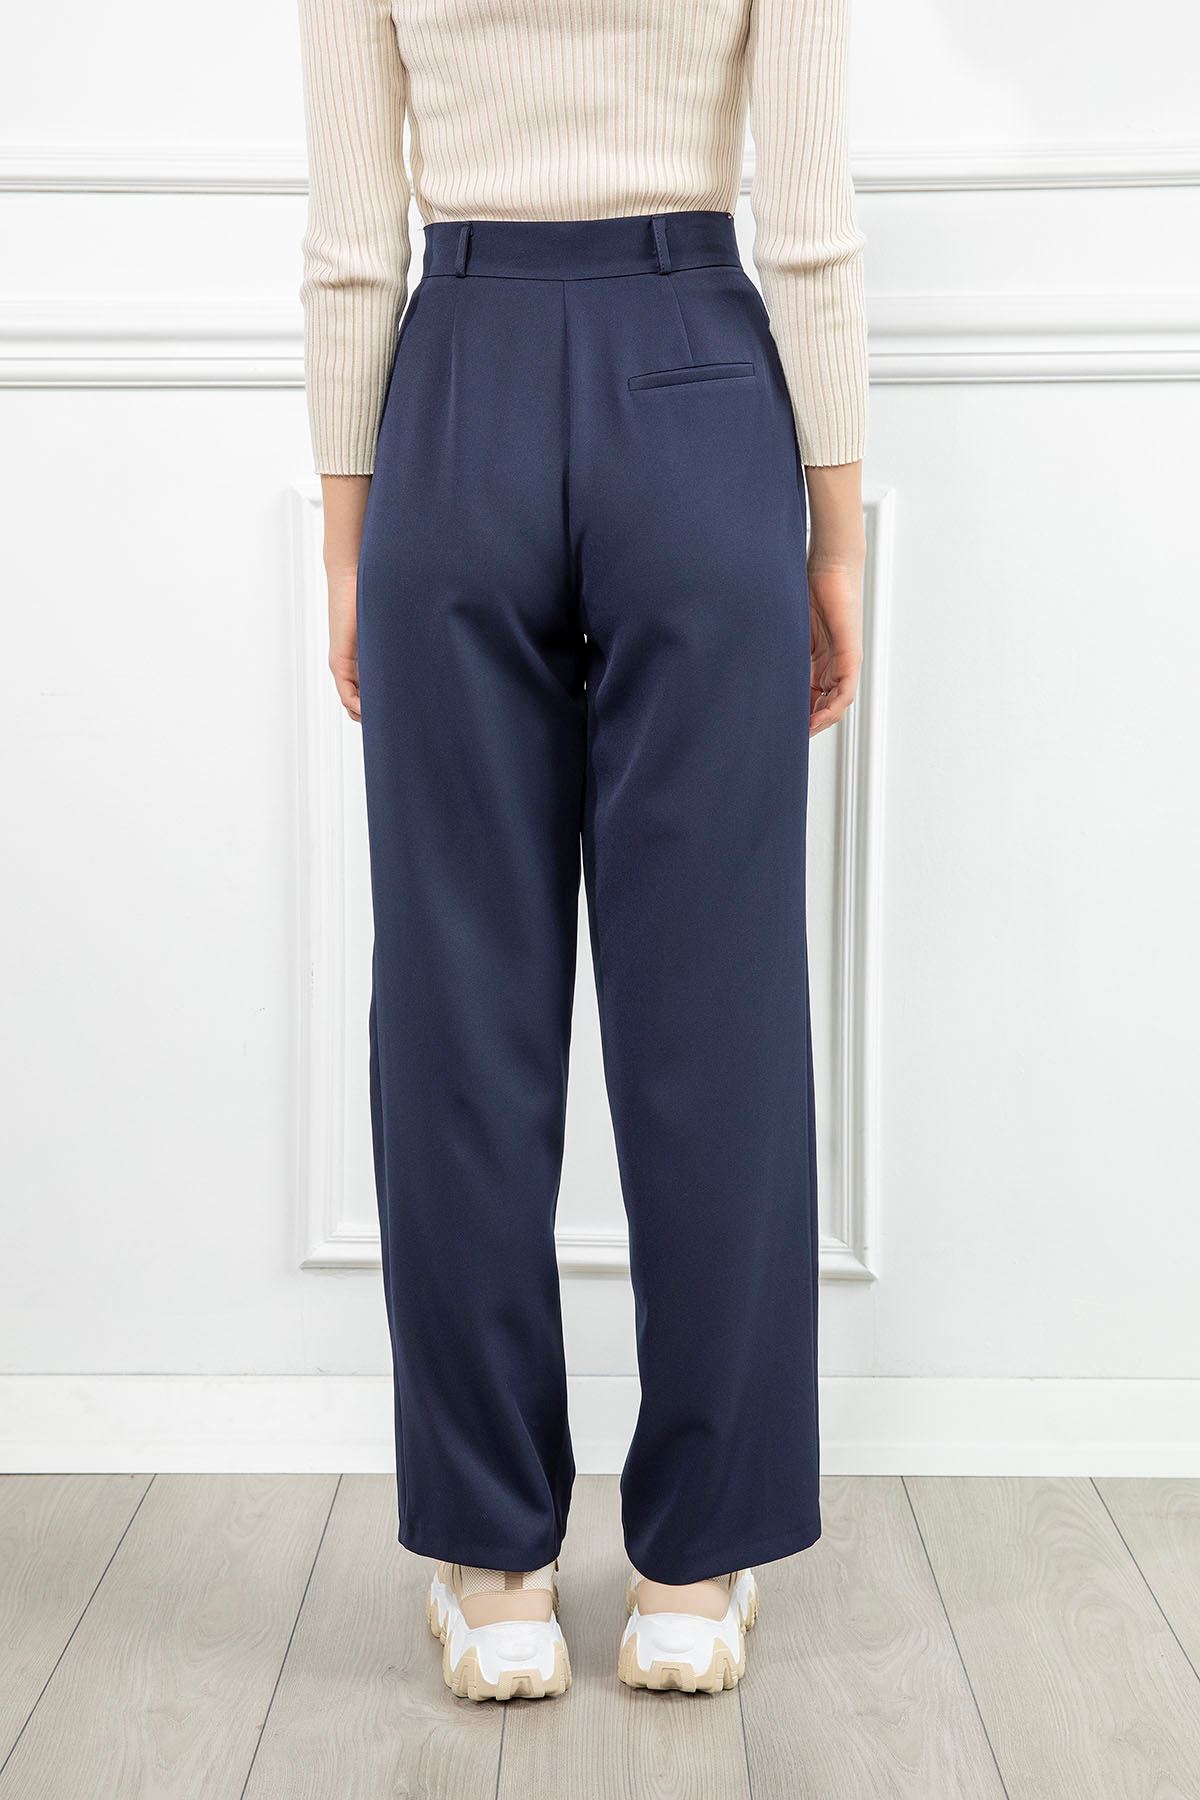 Atlas Kumaş Maxi Boy Bol Kalıp Asimetrik Detaylı Kadın Pantolon-Lacivert